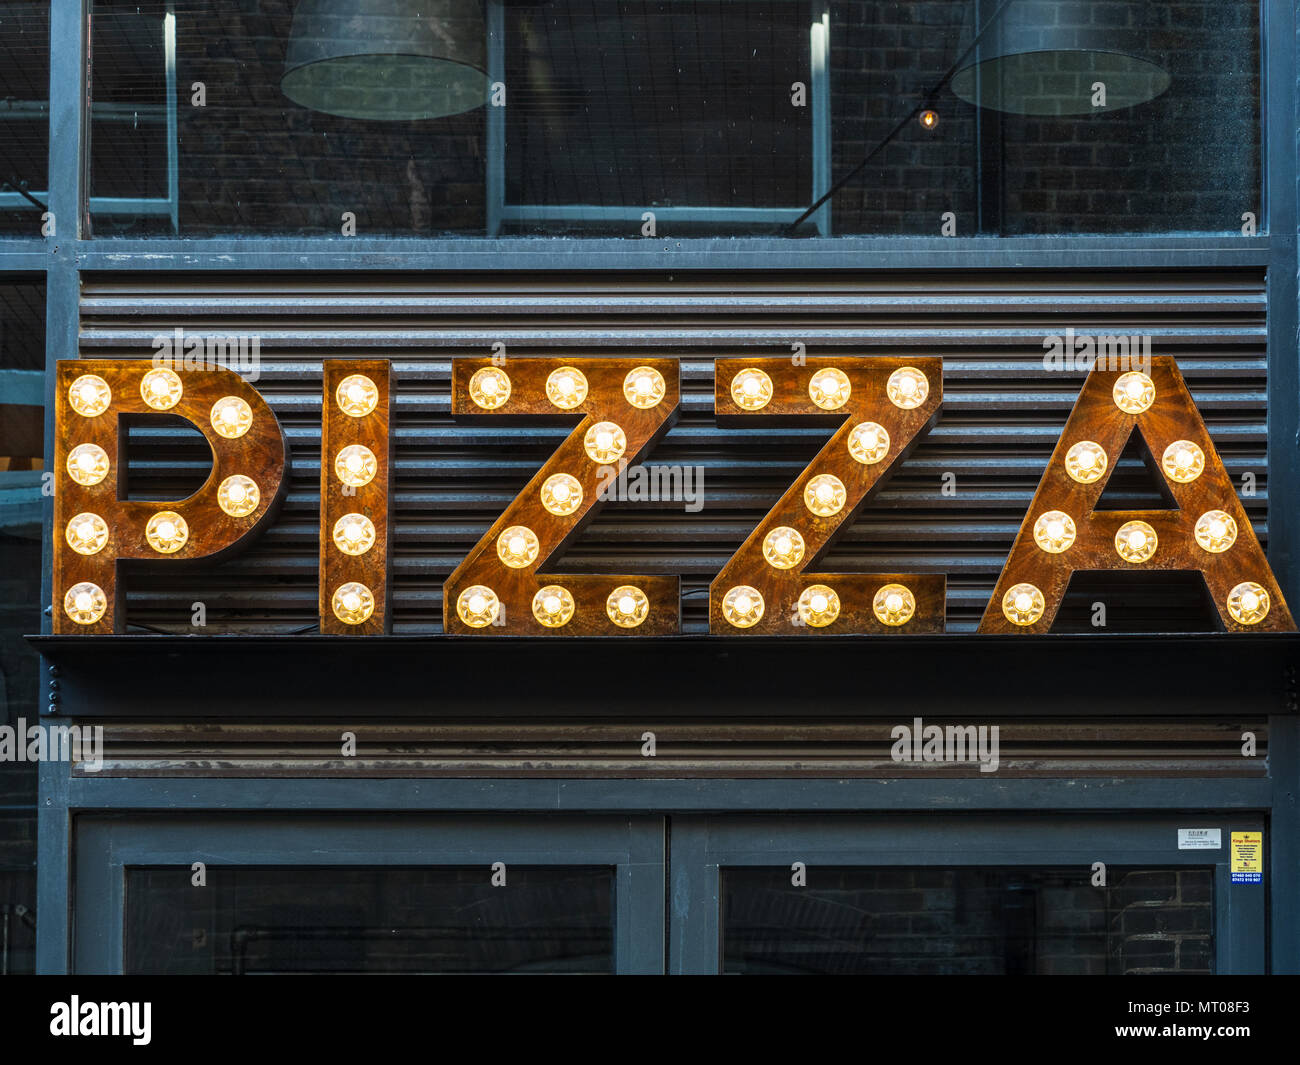 Feux - un signe de la Pizza Pizza lumineux affiche à l'extérieur d'un restaurant dans le quartier de Shoreditch Banque D'Images